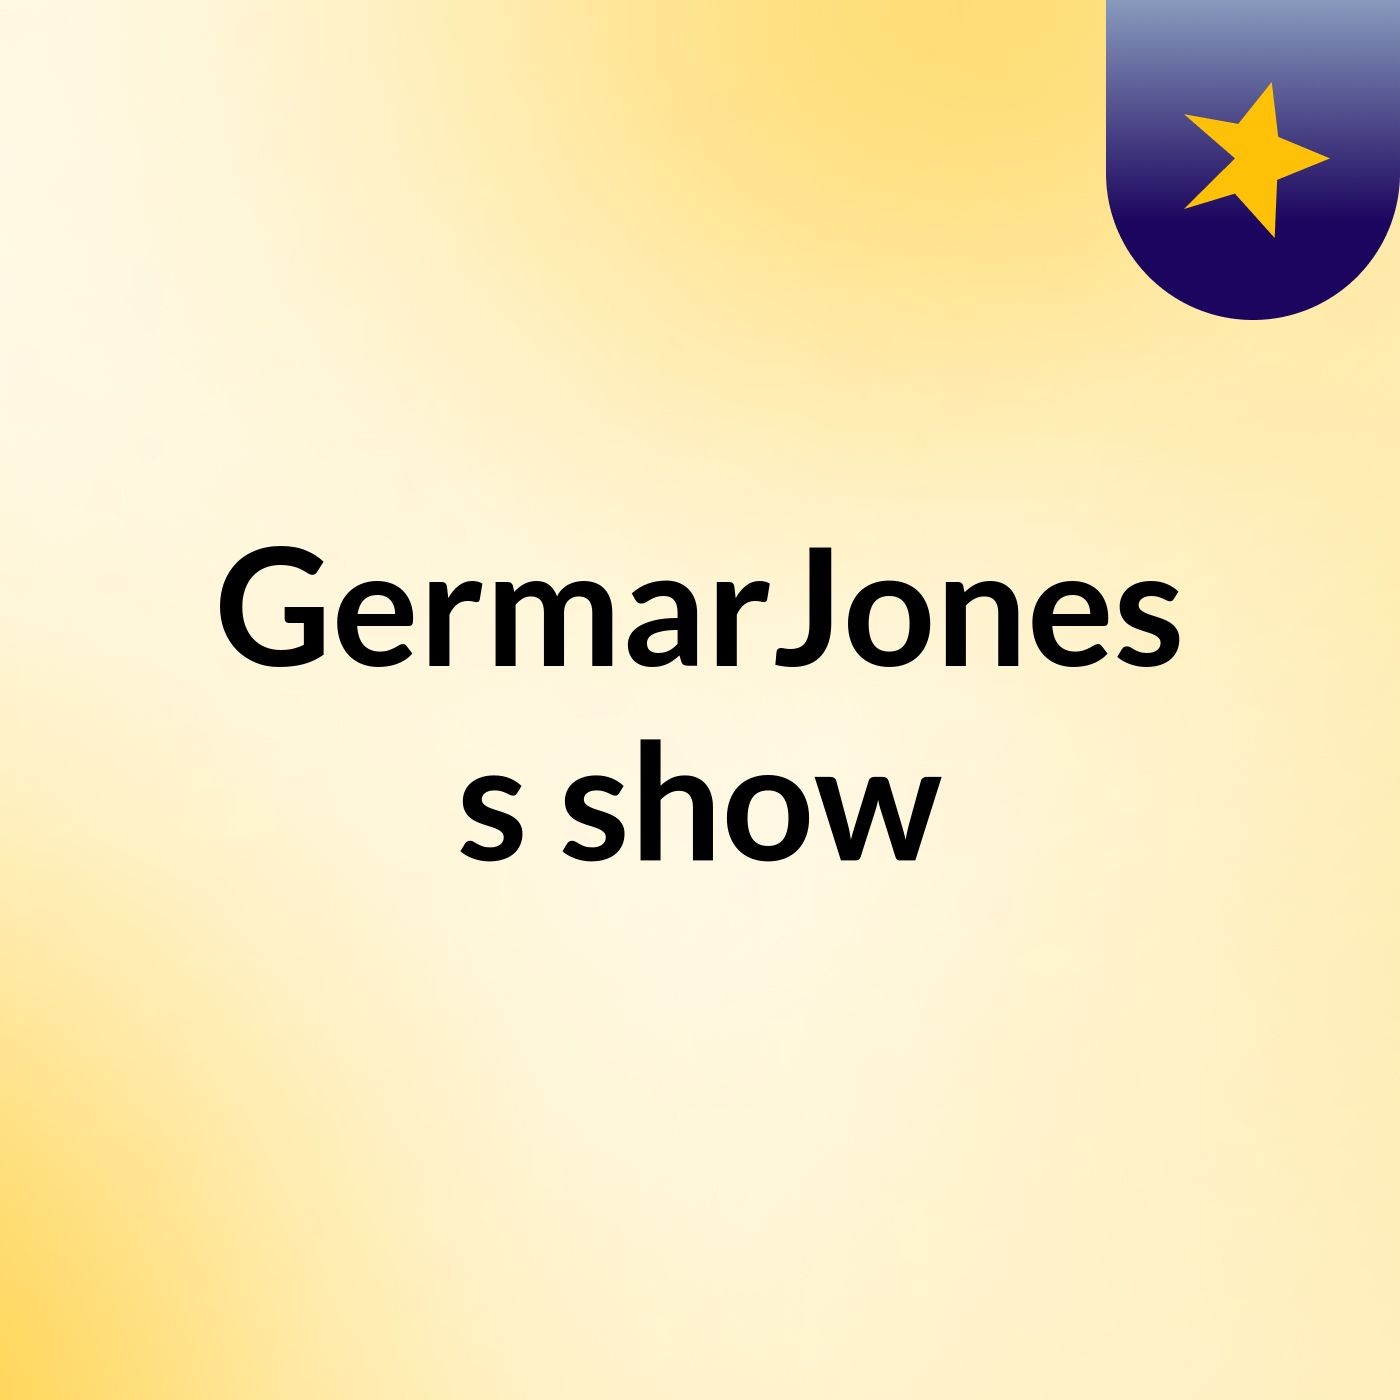 GermarJones's show